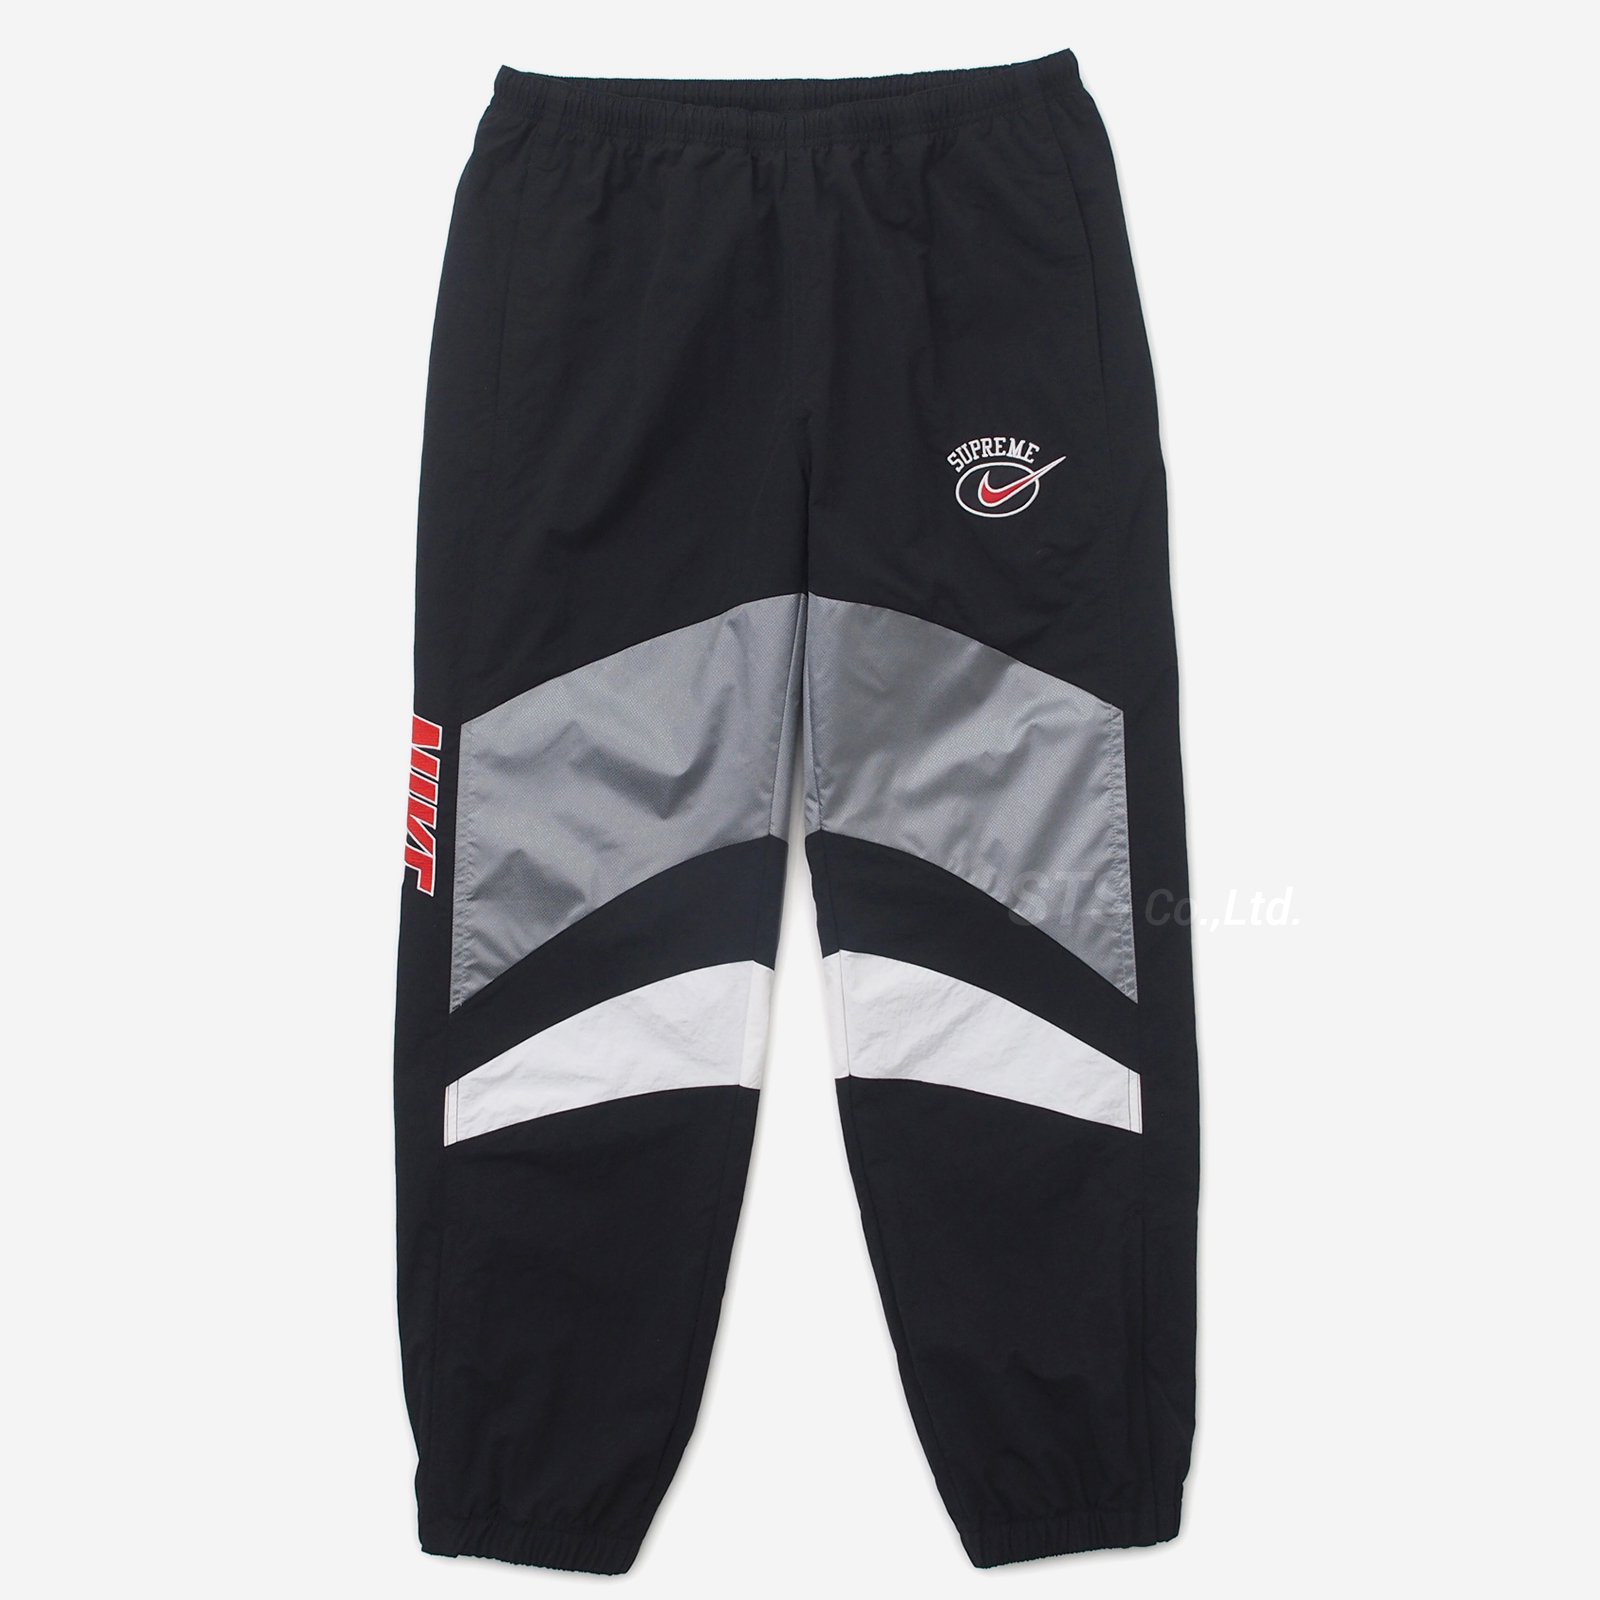 Supreme/Nike Warm Up Pant - ParkSIDER